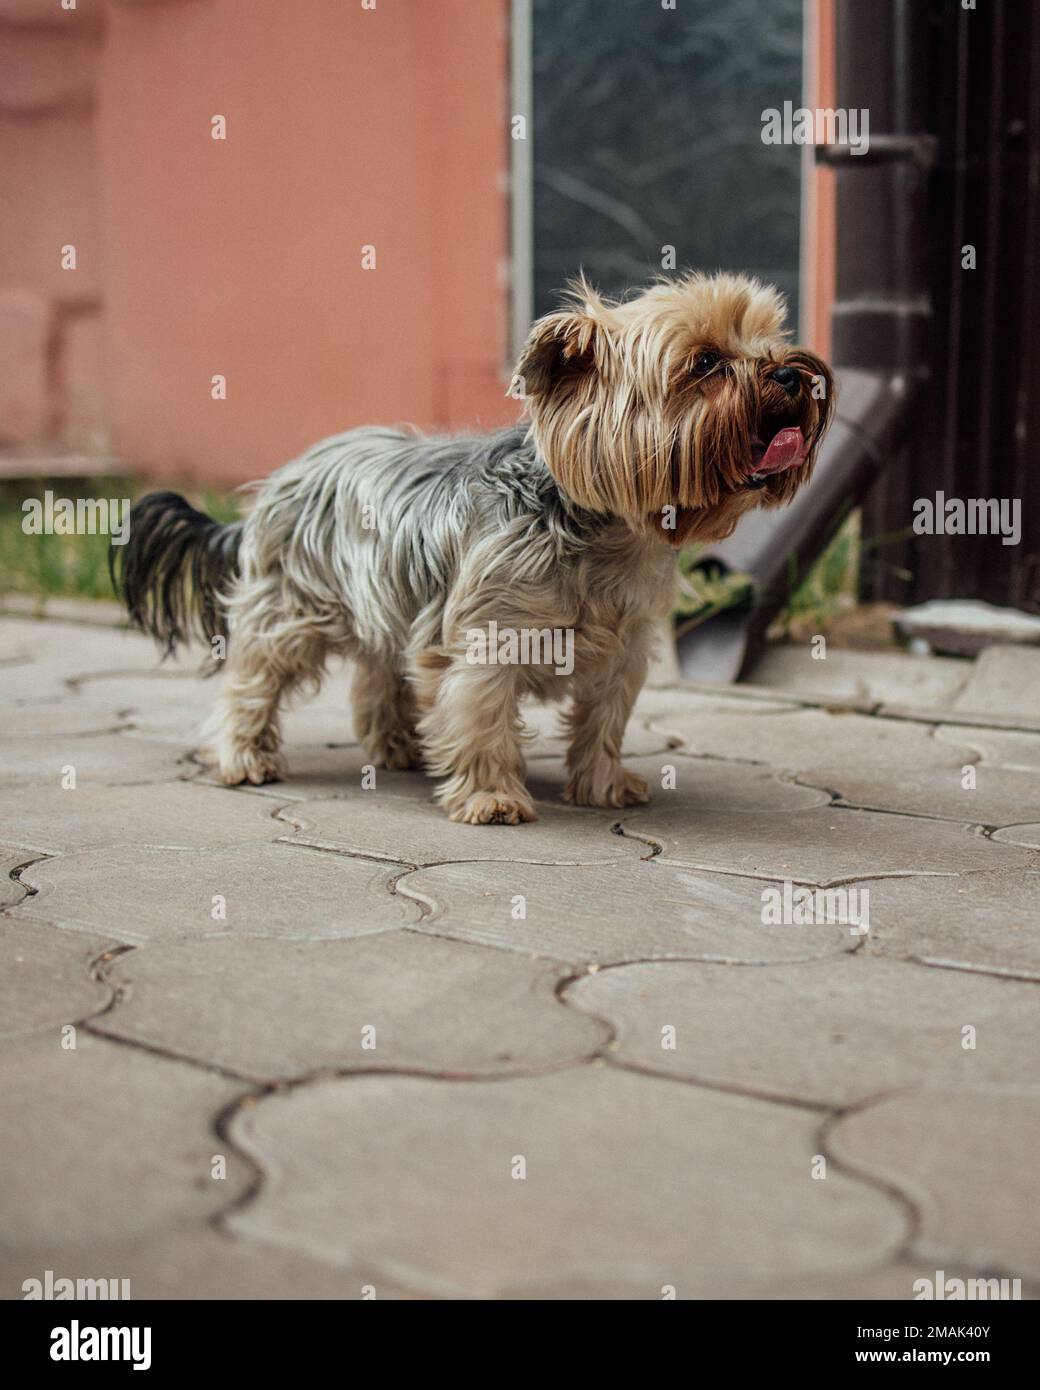 Kleiner niedlicher yorkshire Terrier Hund auf einem Spaziergang im Freien. Vor dem Besuch des Friseursalons ist der Hund ungekämmt. Hochwertige Fotos Stockfoto